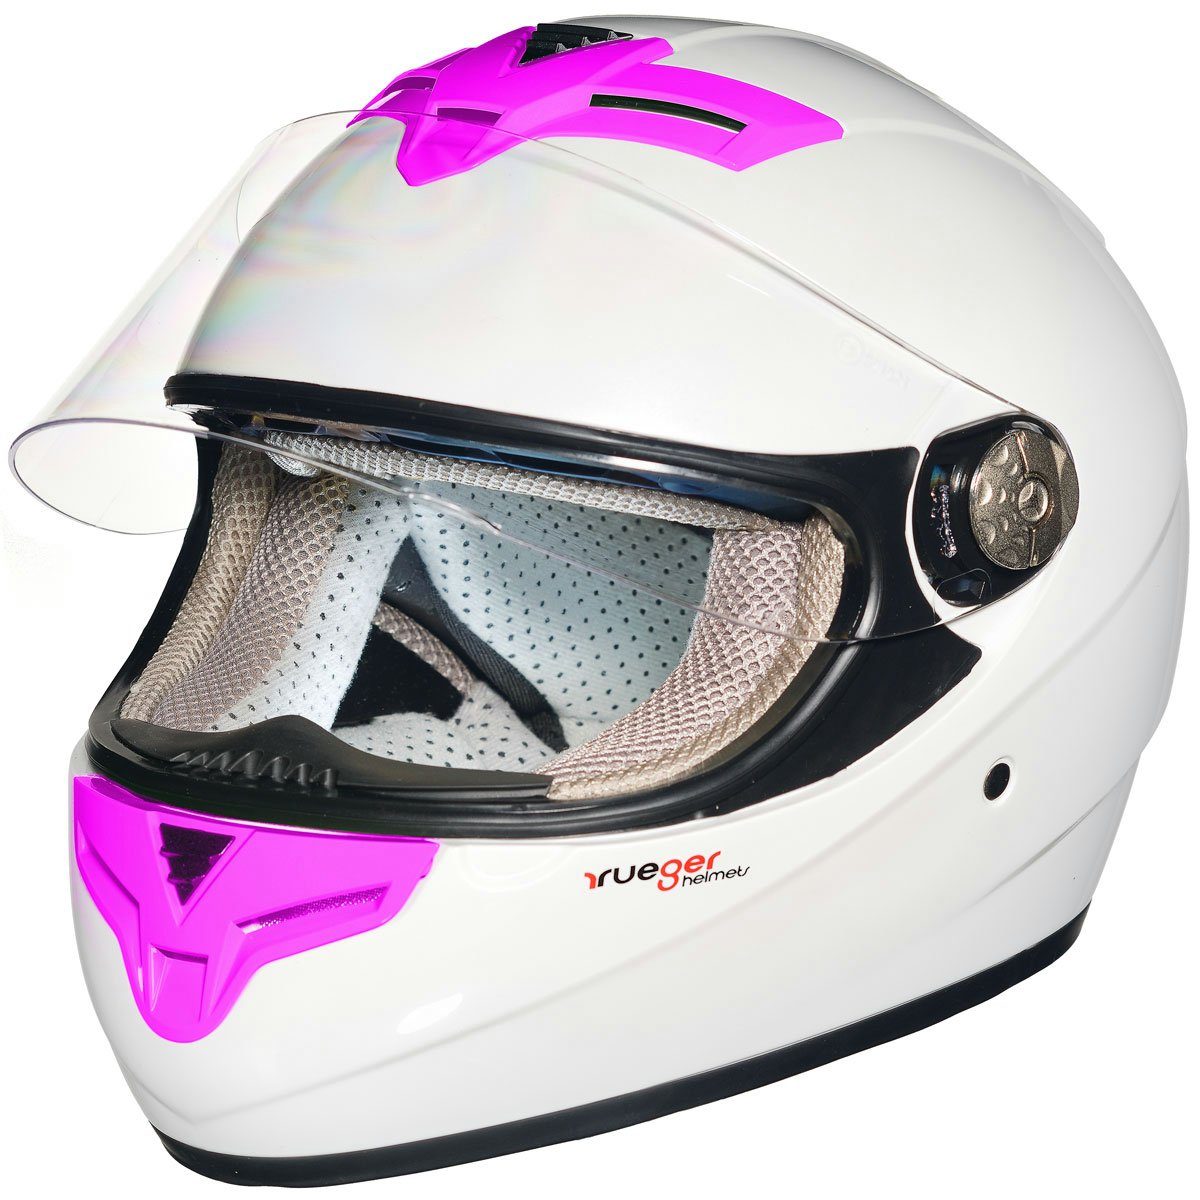 rueger-helmets Motorradhelm rueger Integralhelm Motorradhelm Kinder Motorrad Integral Bobber Sturz Helm PinlockRT-823 Weiß/Pink L